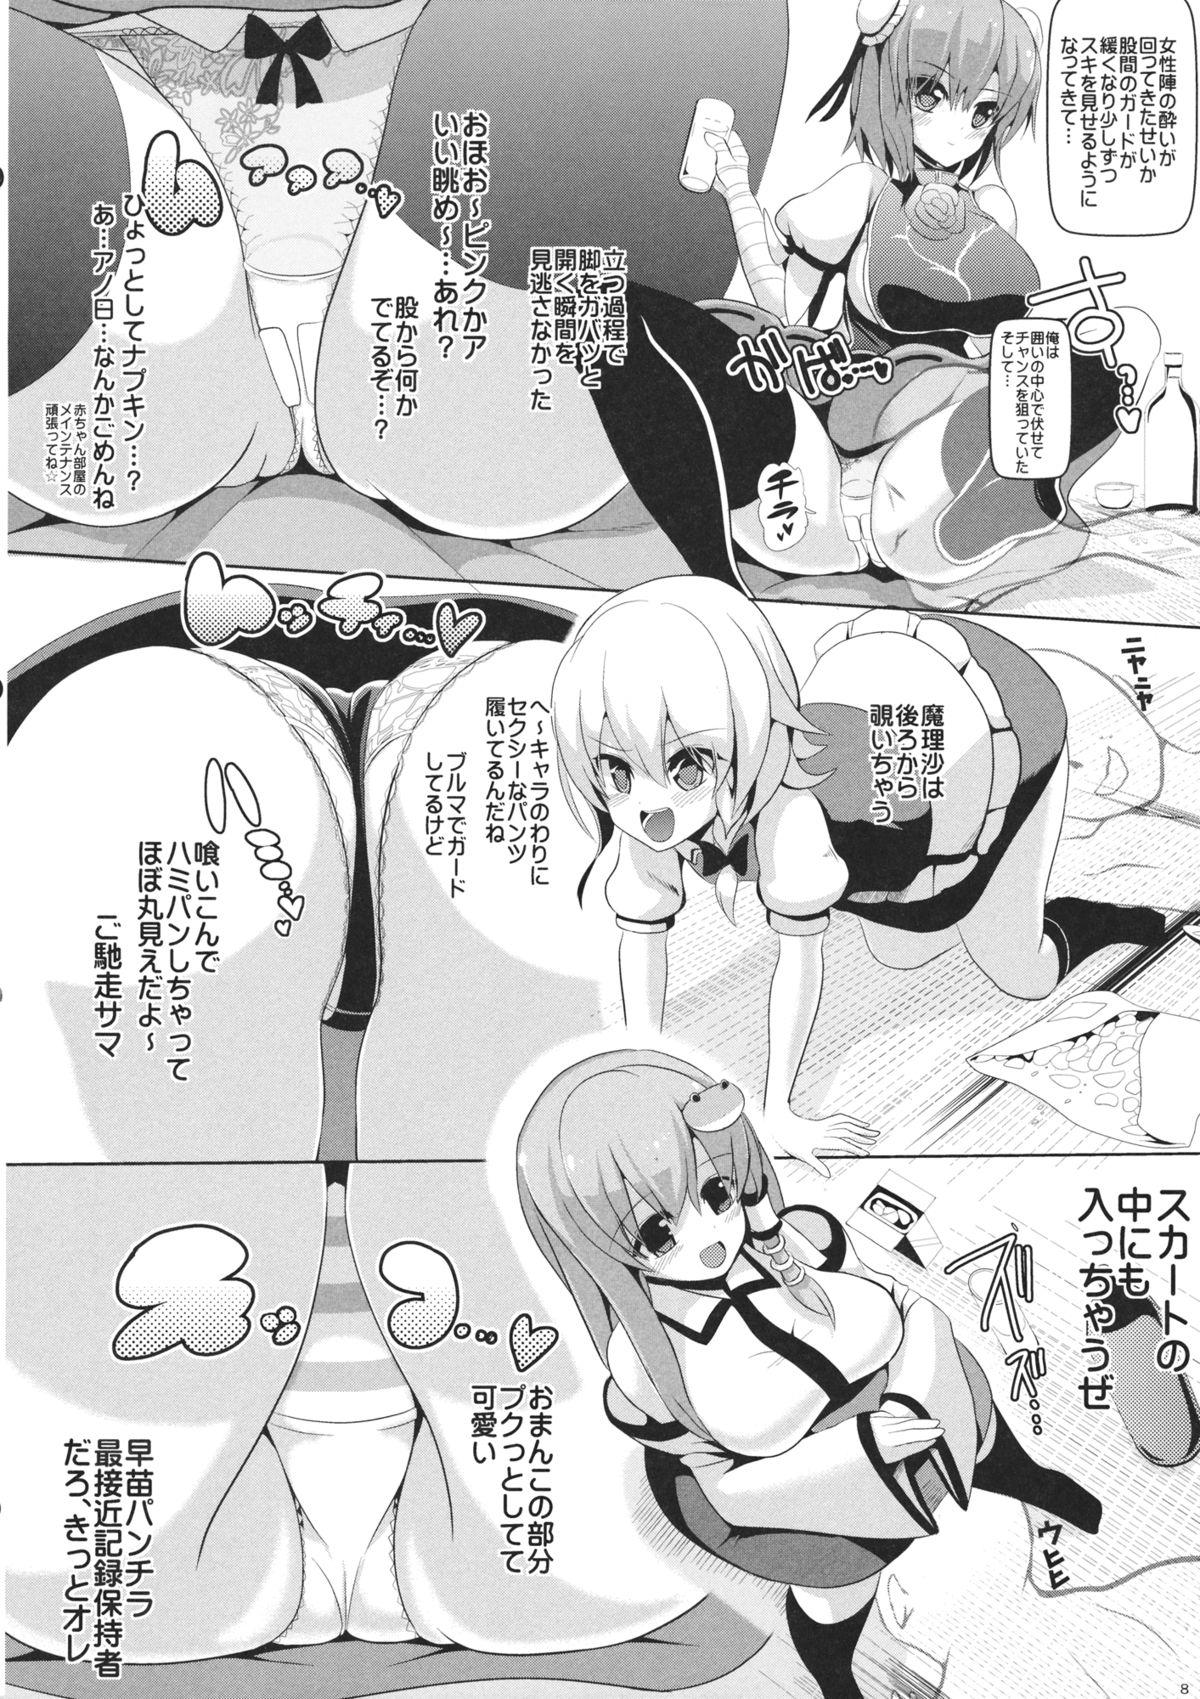 Tranny Touhou Toumei Ningen 4 Shinnyuu Reimu n Chi - Touhou project Monstercock - Page 9